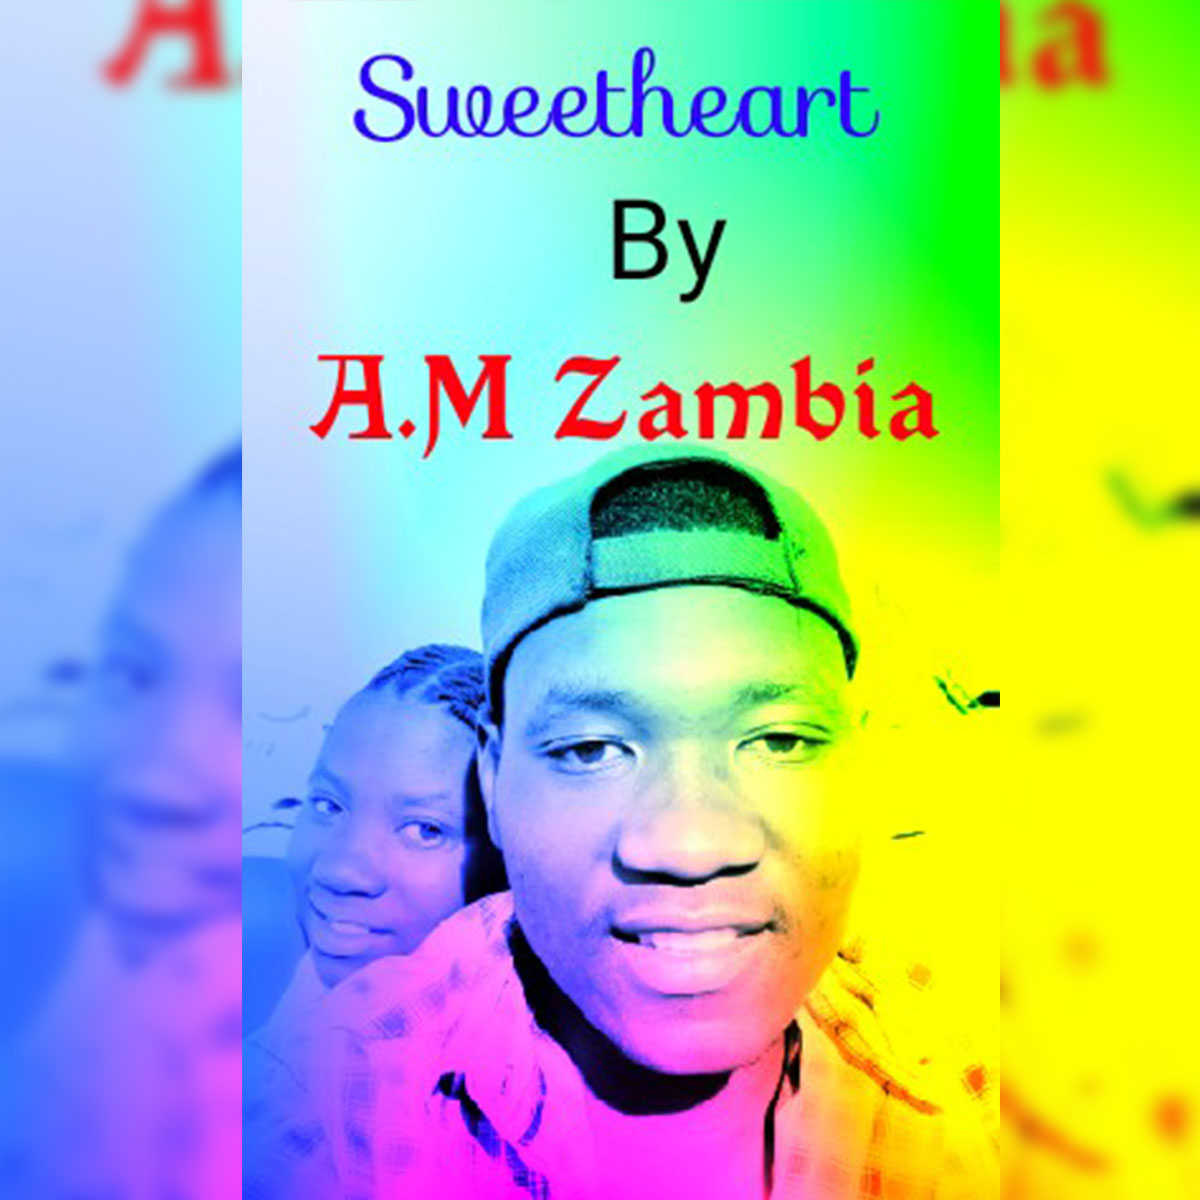 A.M Zambia - Sweetheart